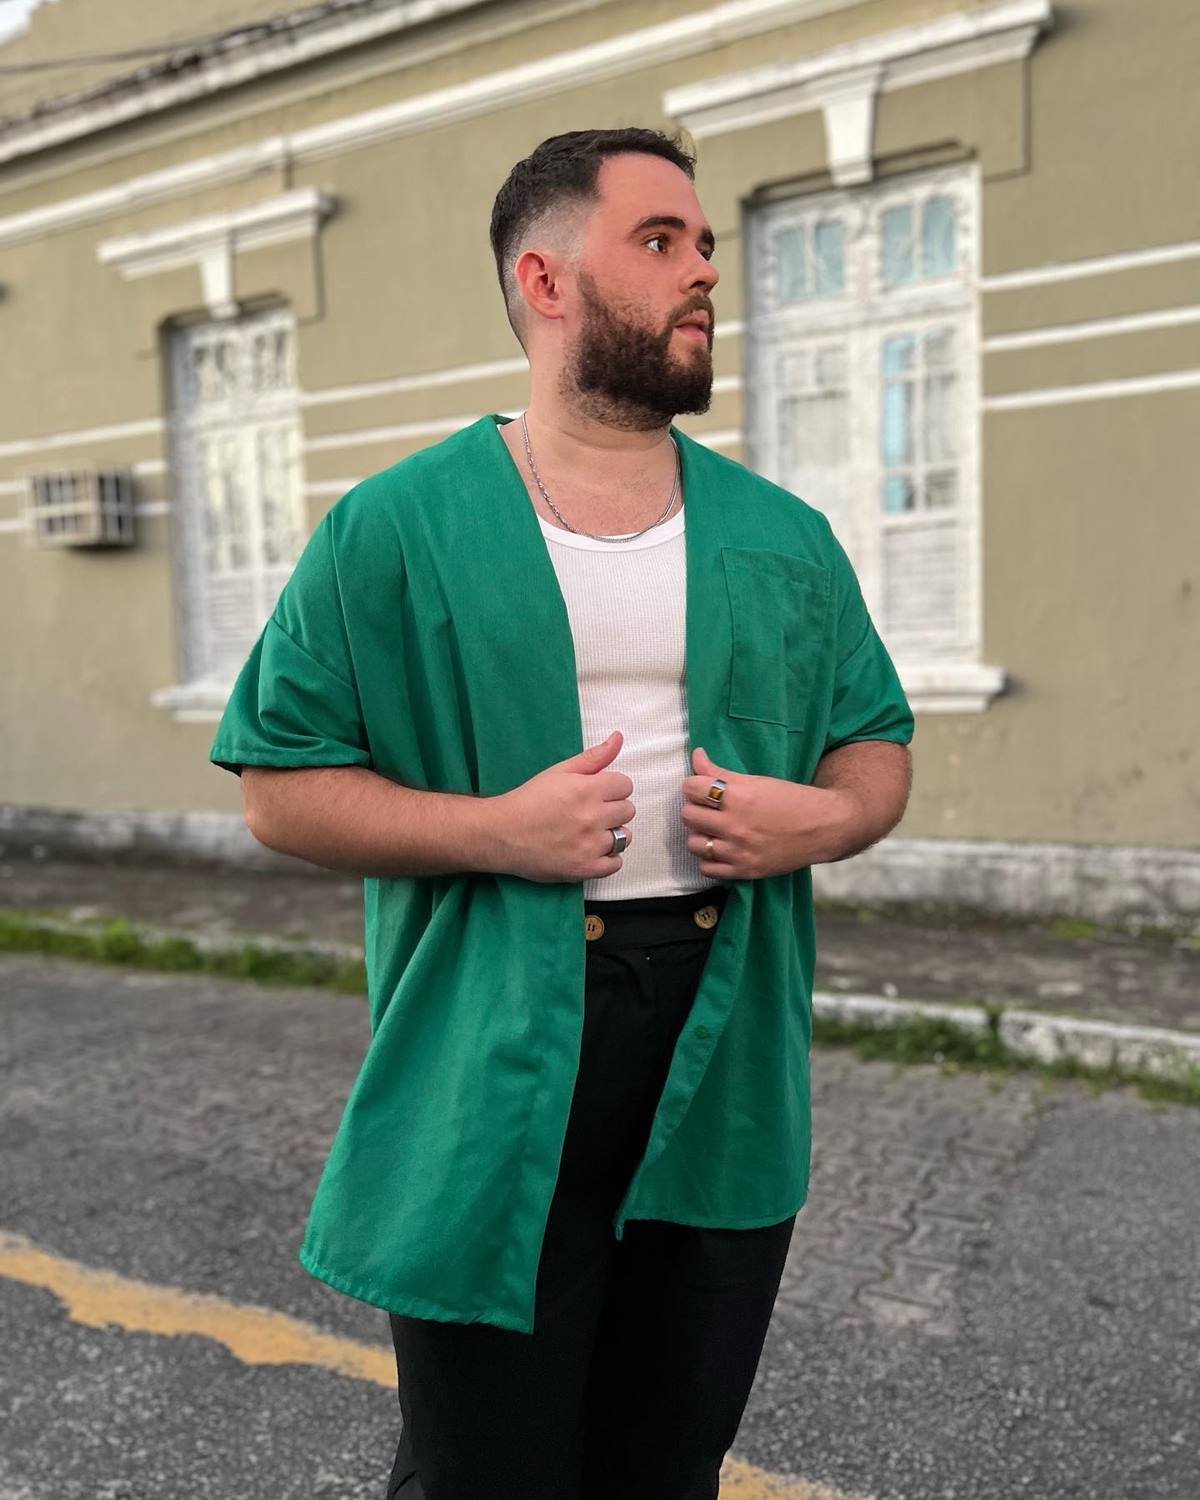 O influencer Vitor Arruda, um homem branco e jovem, de cabelo e barba preto, posa para foto na rua. Usa uma regata branca, uma camisa verde aberta por cima e uma calça preta. - Metrópoles